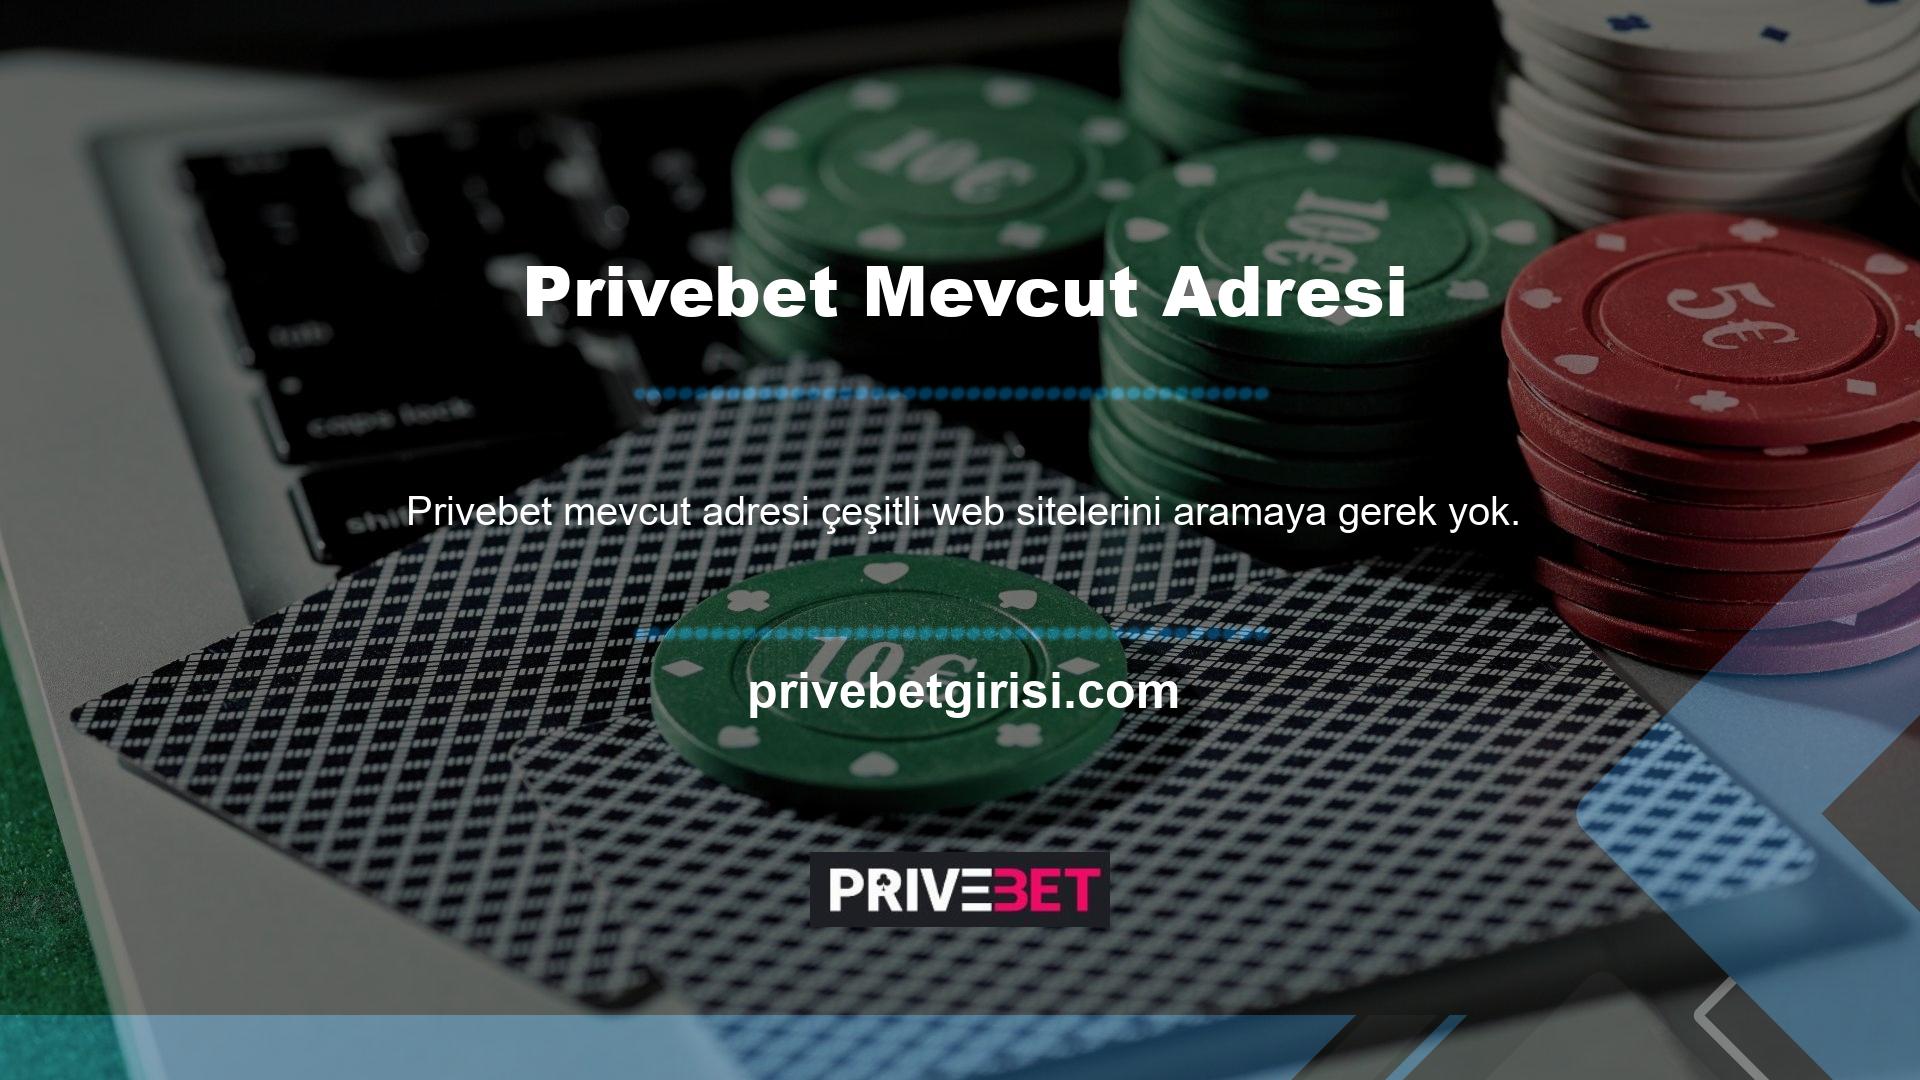 Privebet mevcut adresi, Privebet sitesinin çökmesi durumunda yeni bir adres sağlar